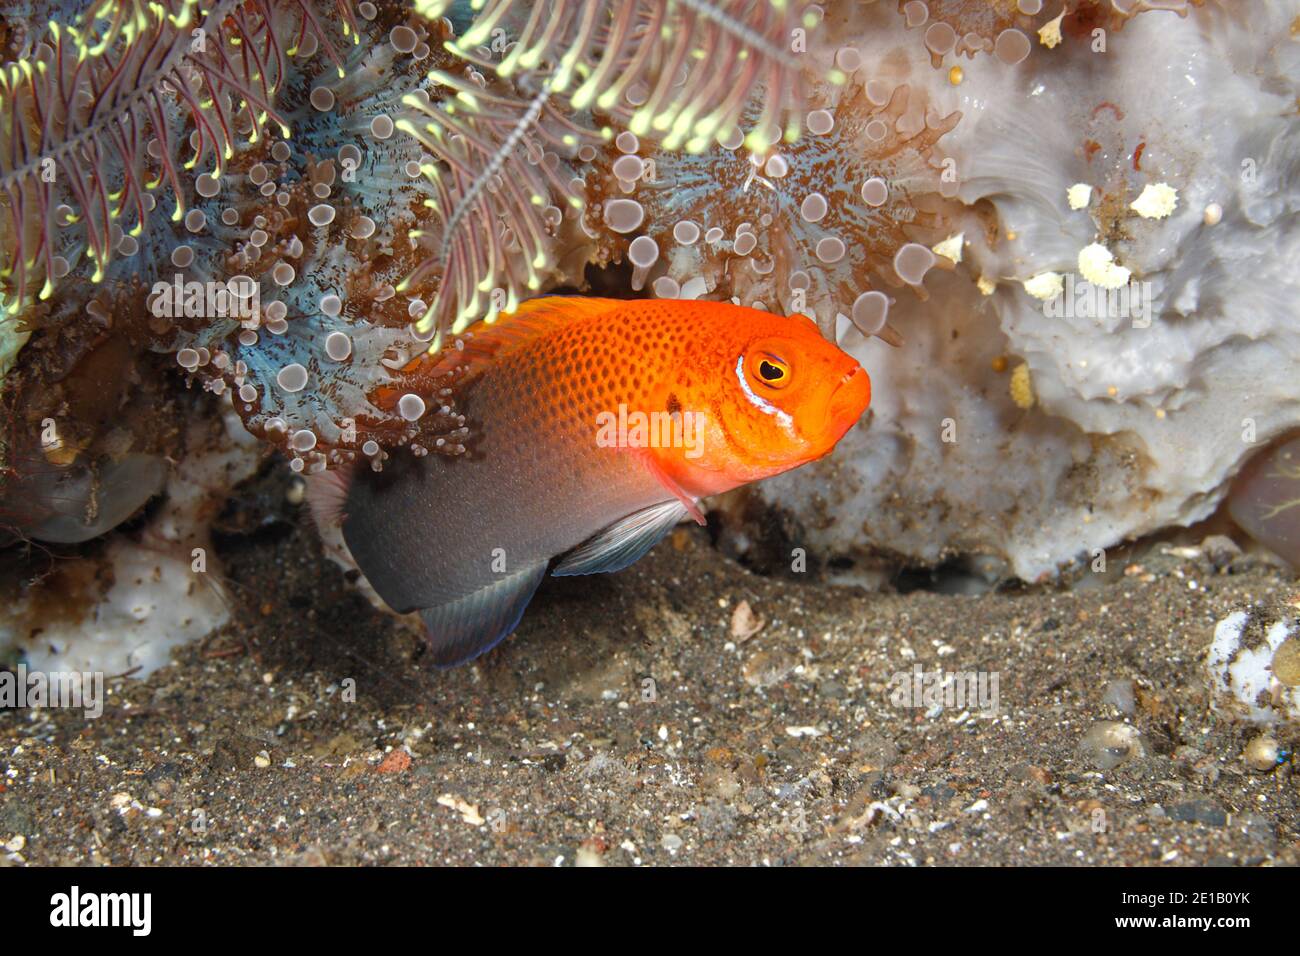 Al menudeo, Dottyback, Pseudochromis steenei. También se llama Dottyback de Steene. Tulamben, Bali, Indonesia. Bali Mar, Océano Índico Foto de stock